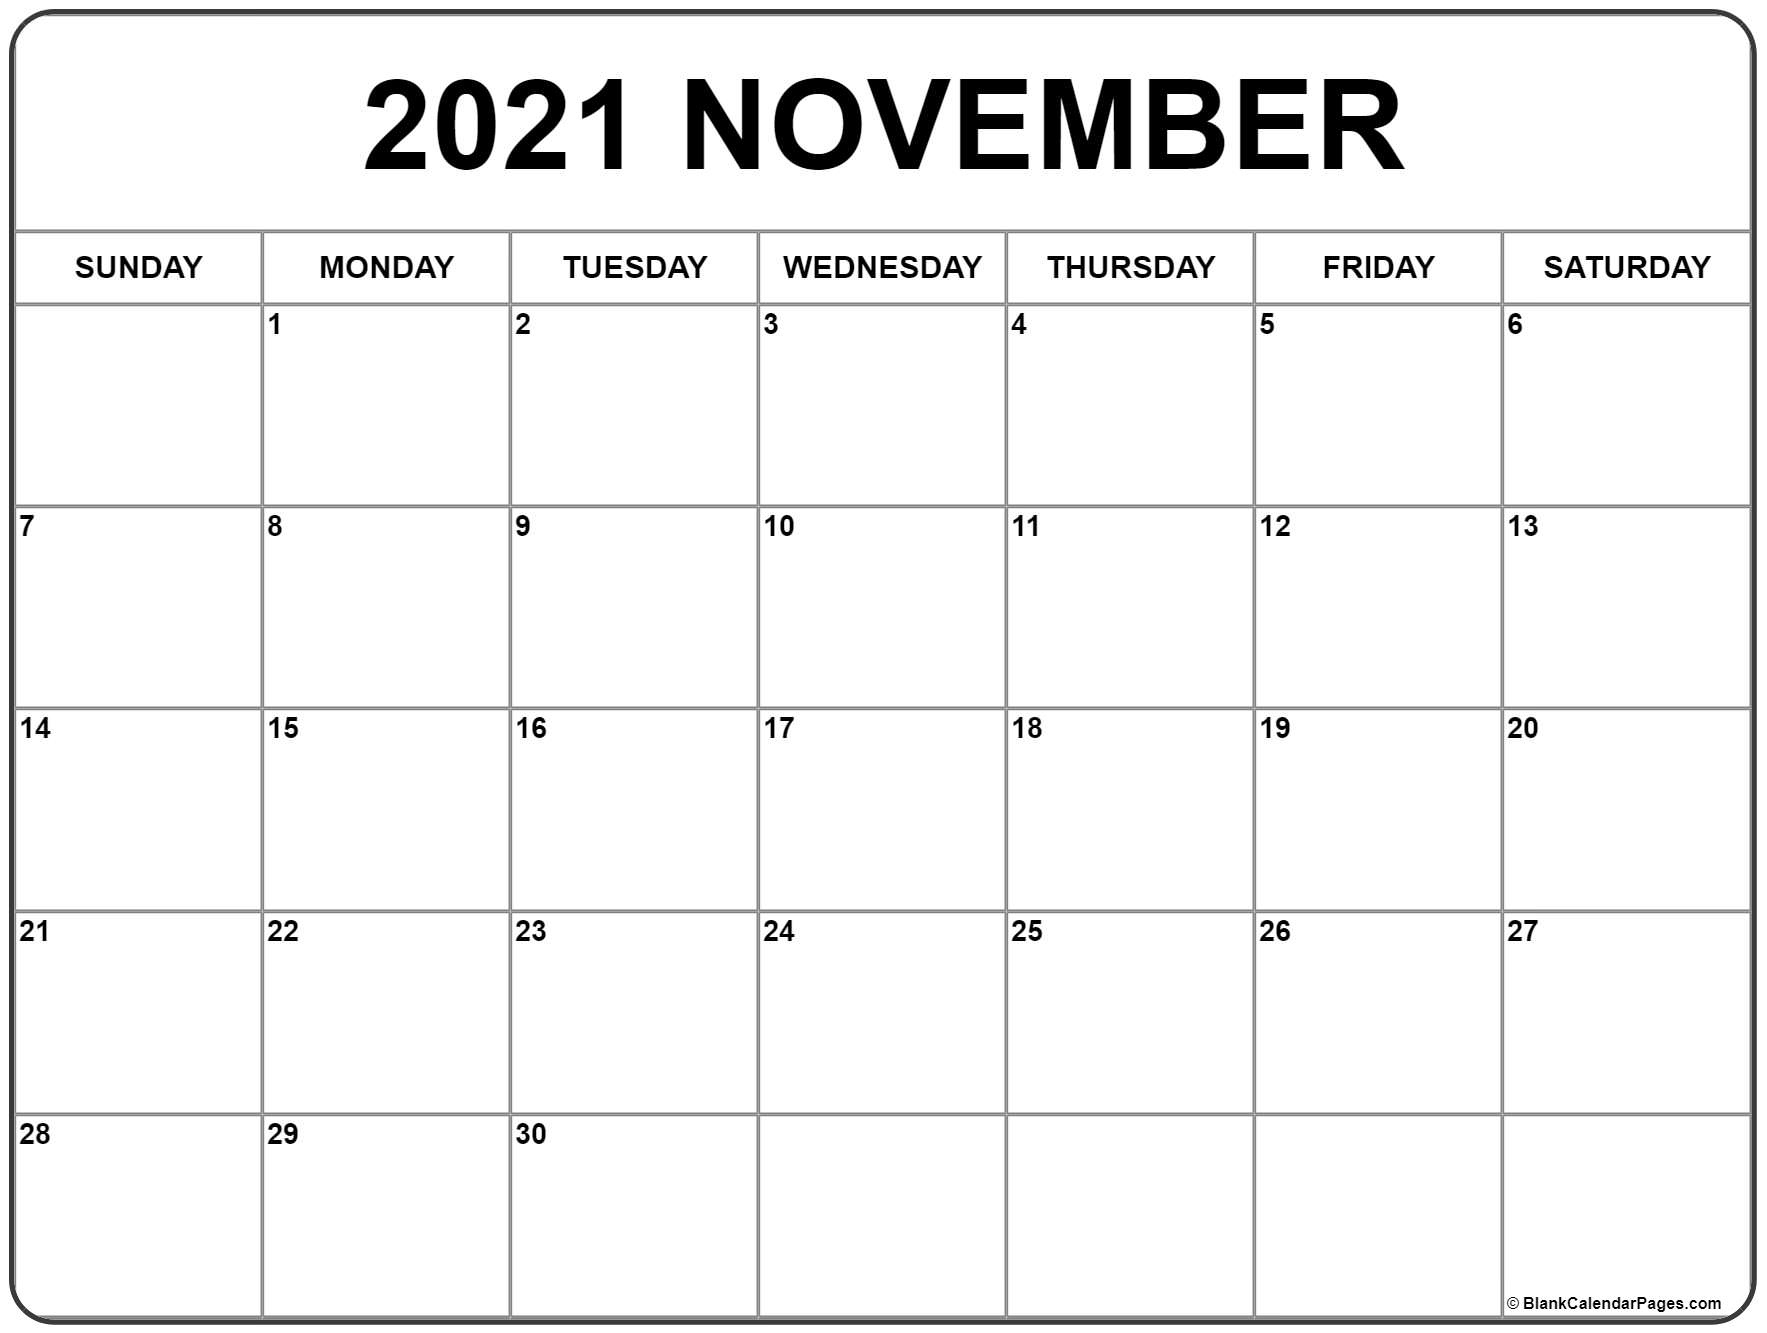 November 2021 Calendar | Free Printable Calendar Templates 1 November 2021 In Islamic Calendar